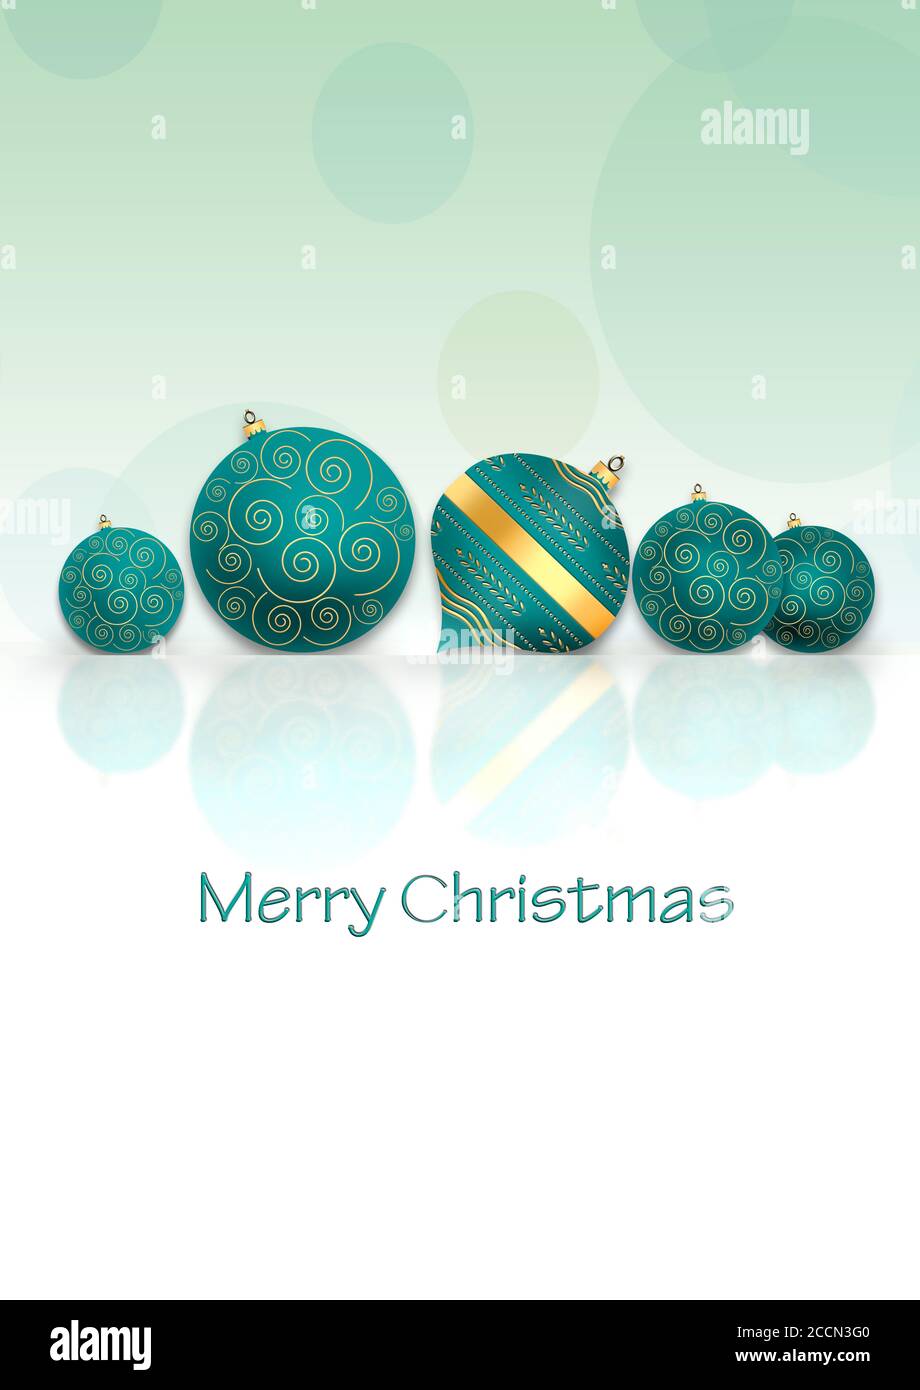 Fond de Noël nouvel an avec boules bleu turquoise avec ornement d'or sur réflexion sur fond vert pastel. Texte Joyeux Noël. Copier l'espace. Banque D'Images